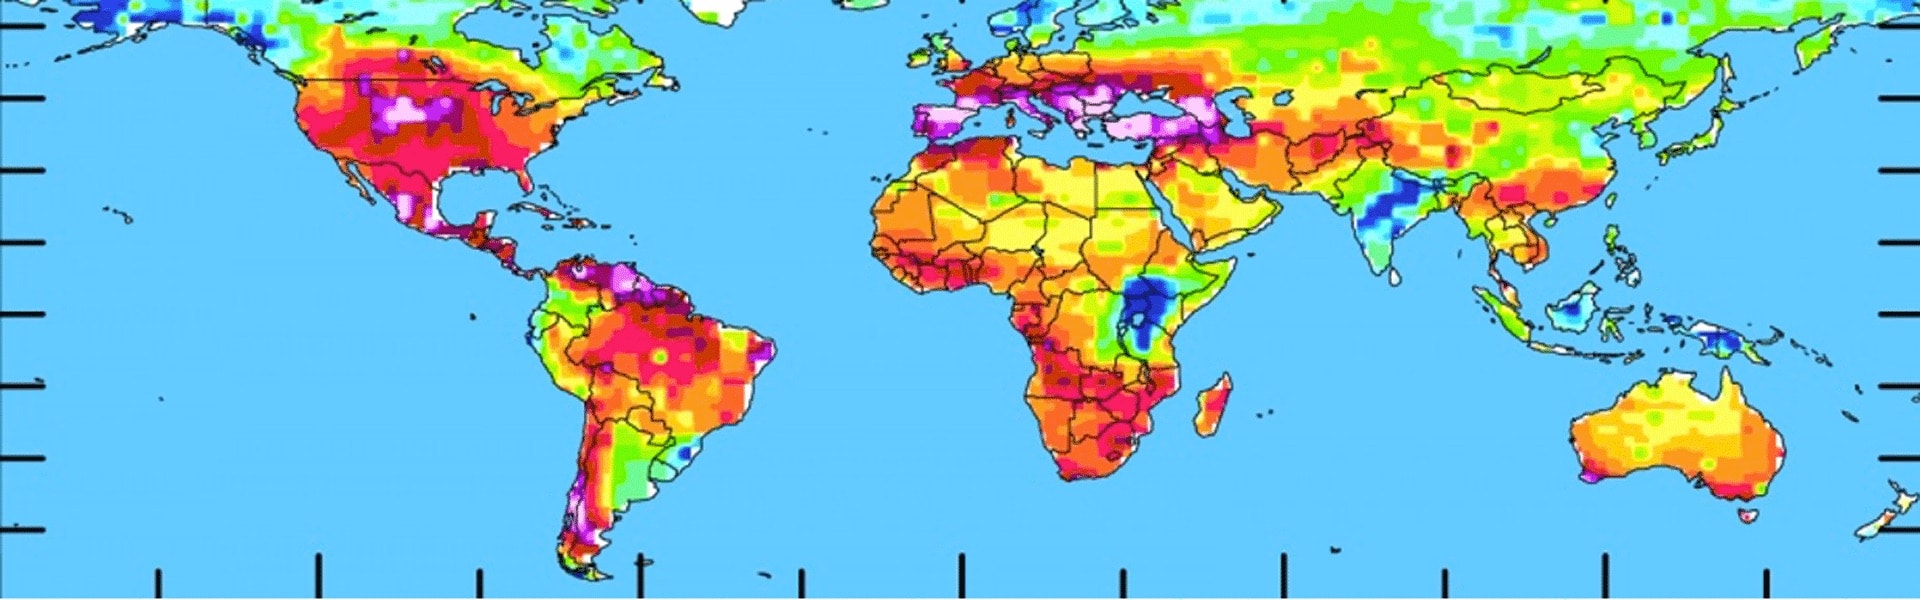 Wetterschäden: Syngenta-Plattform berechnet Wettergarantien für Landwirte